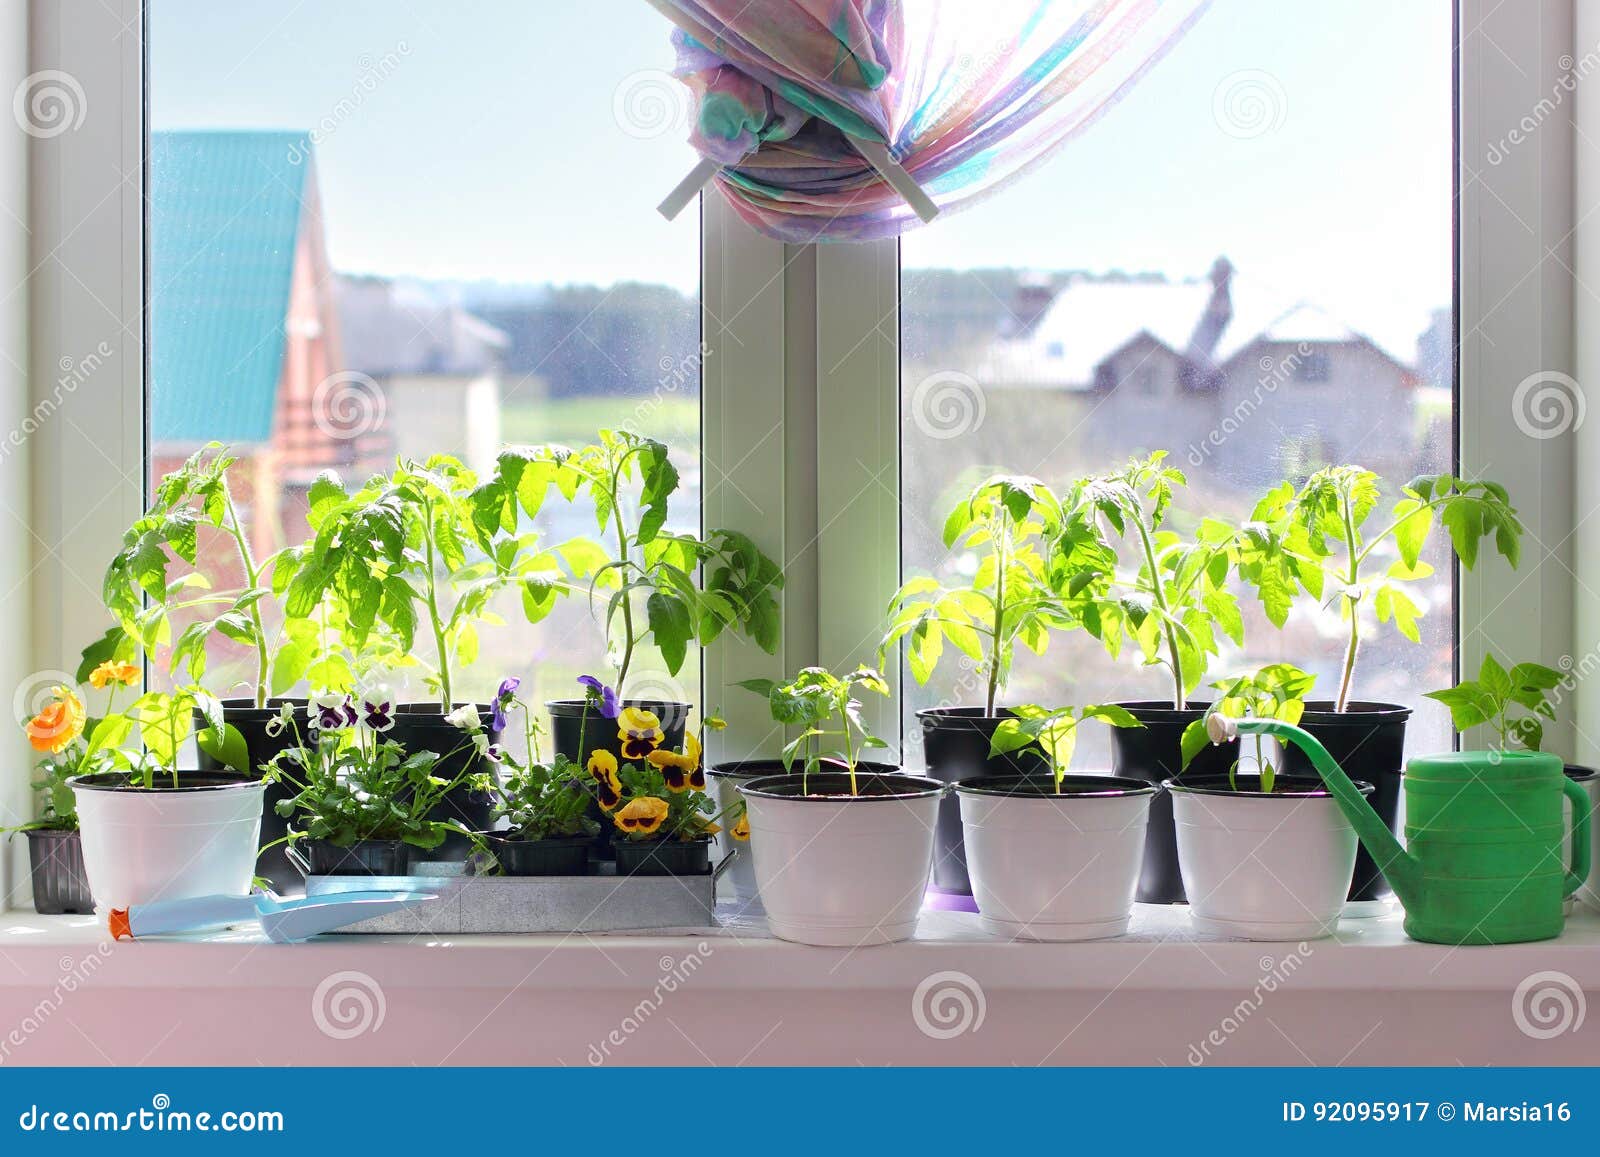 seedlings in pots on a windowsill